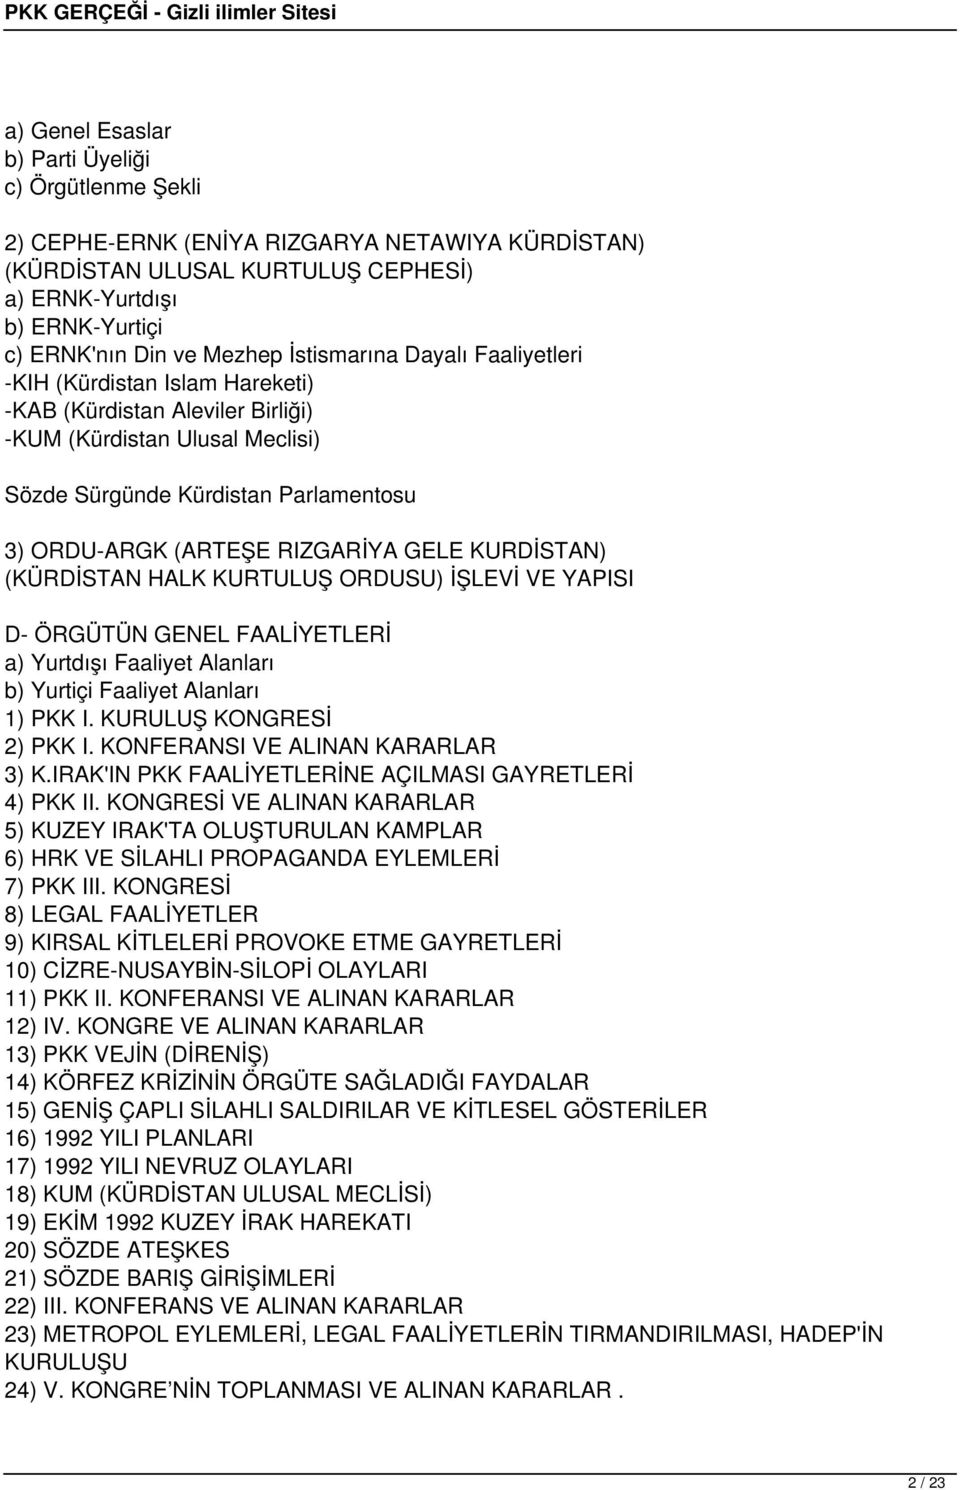 GELE KURDİSTAN) (KÜRDİSTAN HALK KURTULUŞ ORDUSU) İŞLEVİ VE YAPISI D- ÖRGÜTÜN GENEL FAALİYETLERİ a) Yurtdışı Faaliyet Alanları b) Yurtiçi Faaliyet Alanları 1) PKK I. KURULUŞ KONGRESİ 2) PKK I.